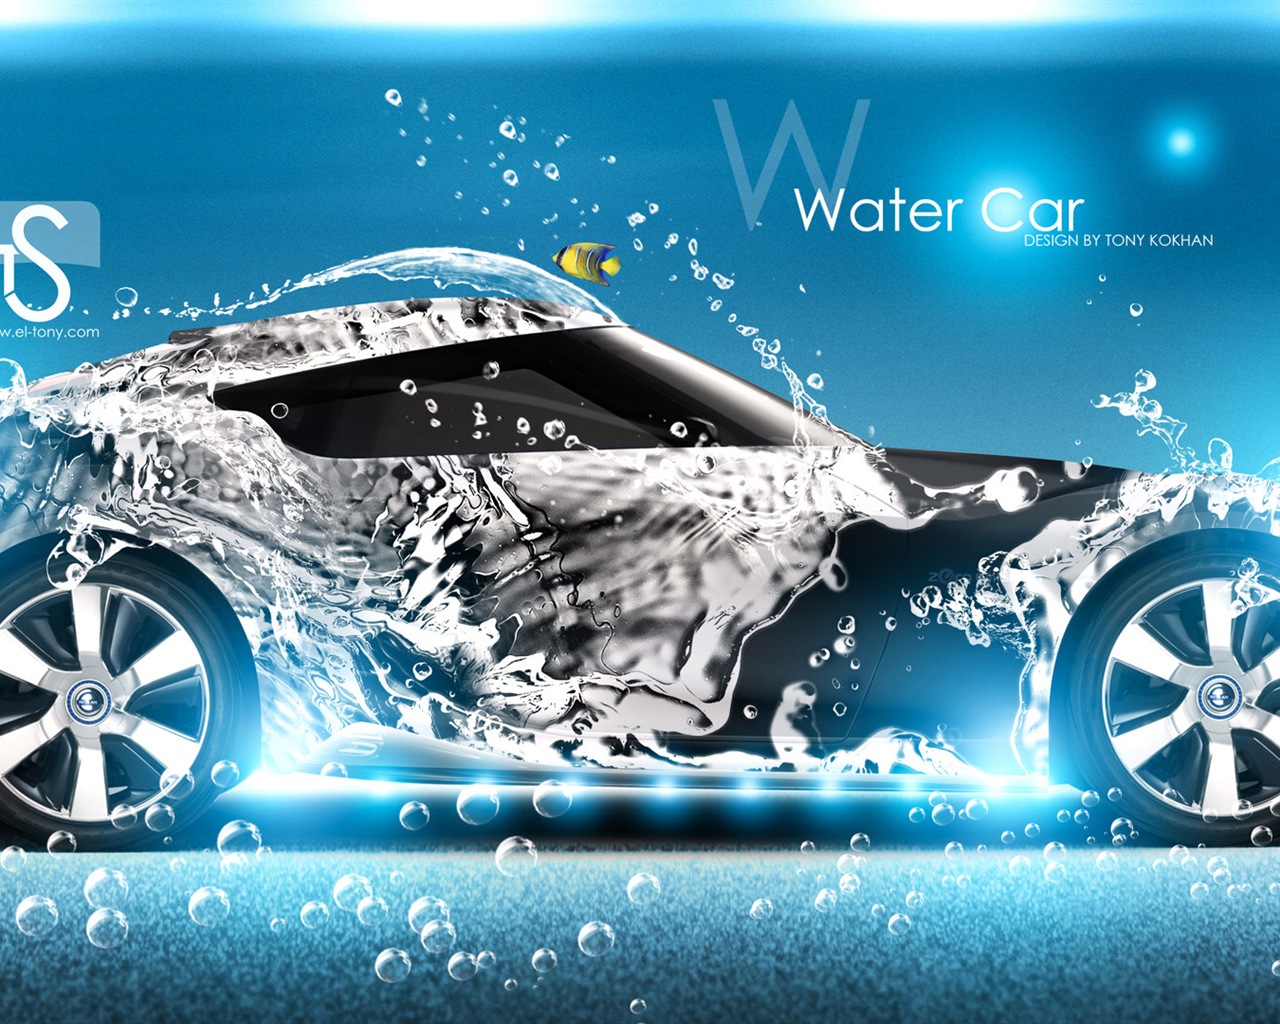 Wassertropfen spritzen, schönes Auto kreative Design Tapeten #5 - 1280x1024